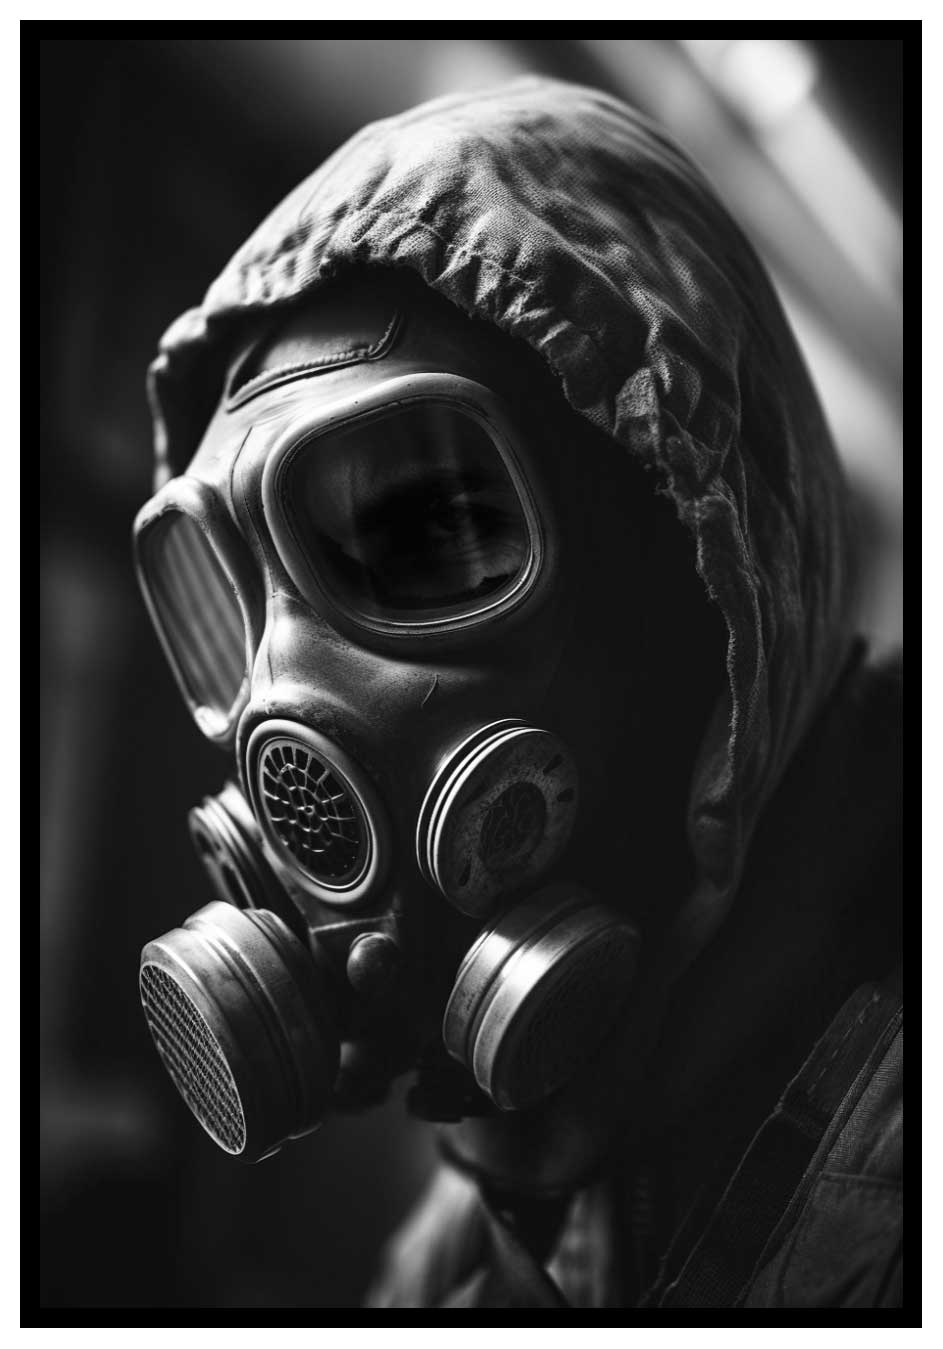 Combinaison de guerre nucléaire - affiche de masque à gaz mystérieux